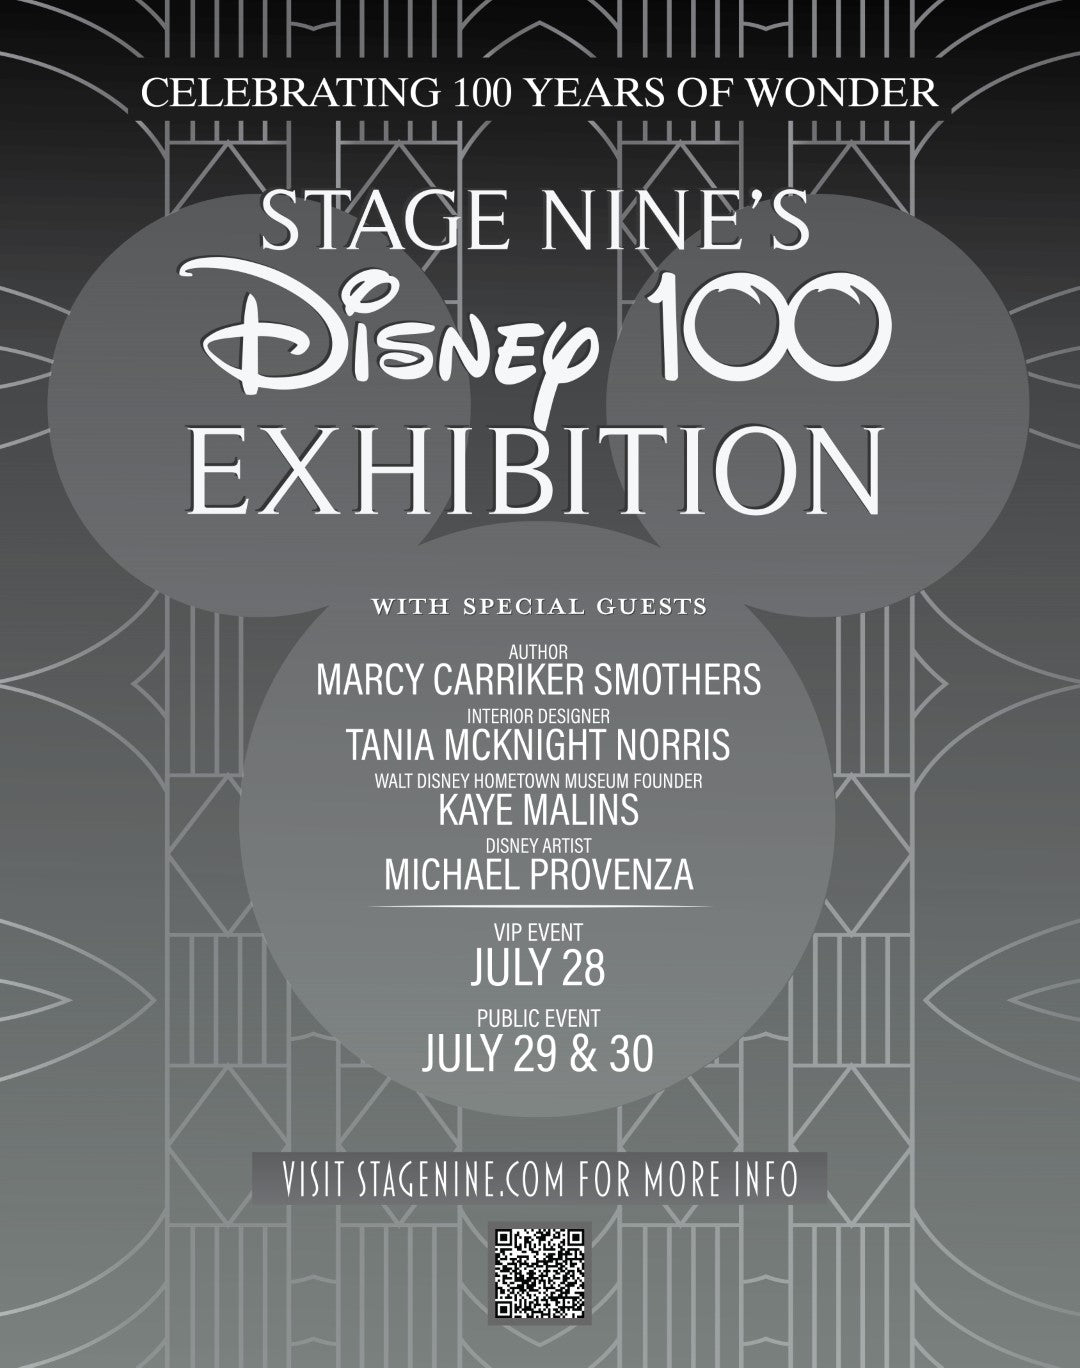 Stage Nine's Disney 100 Exhibition VIP Event